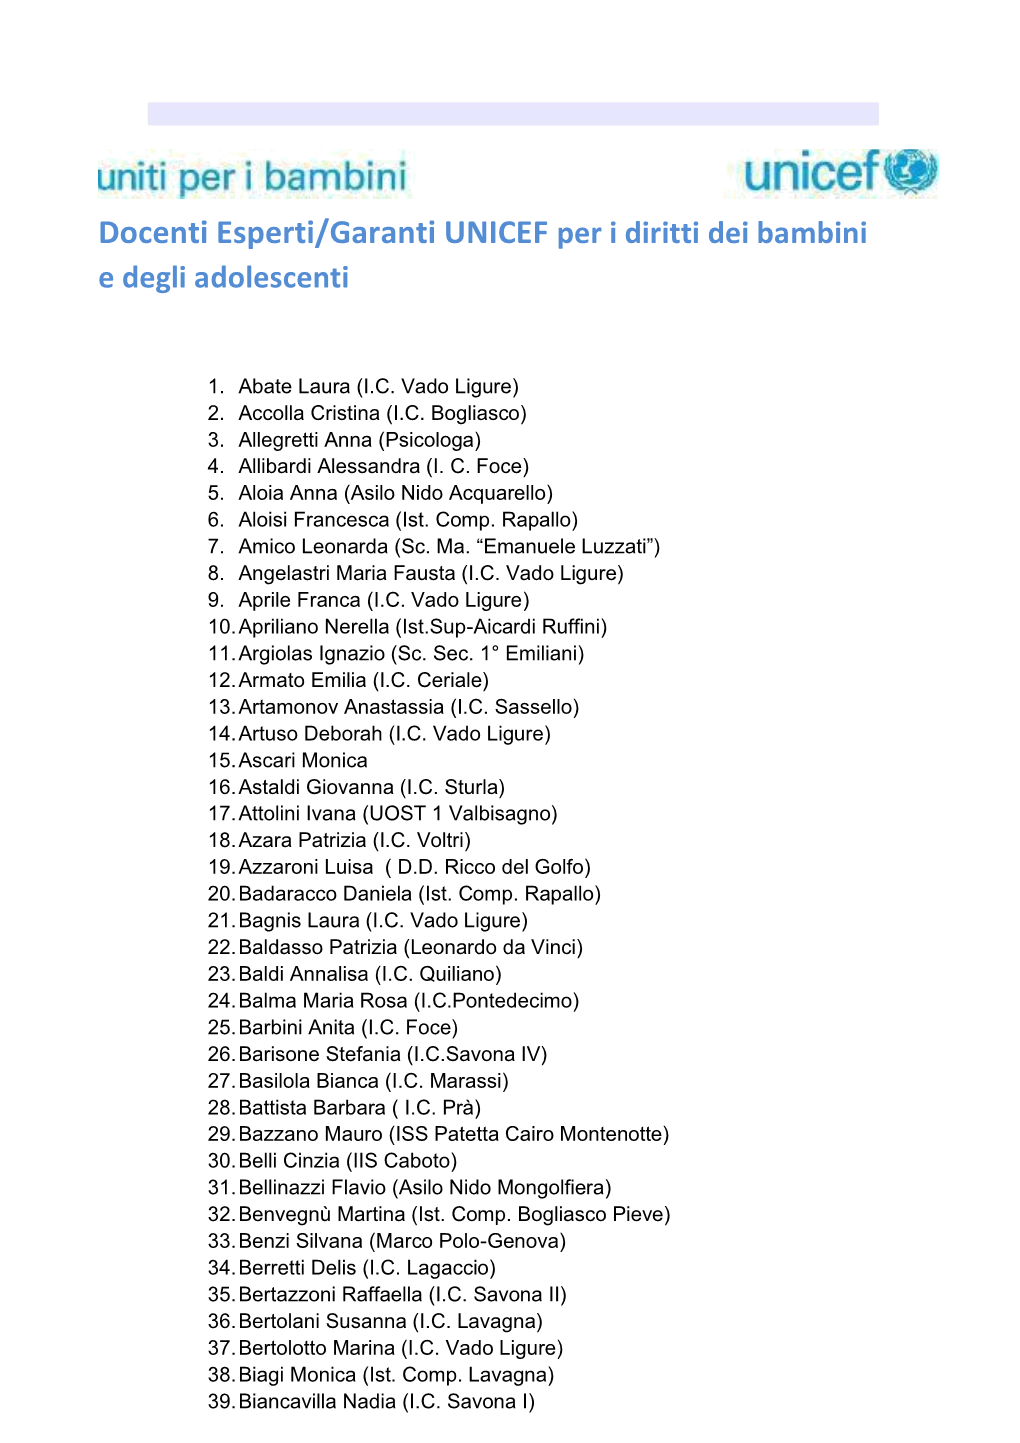 Docenti Esperti/Garanti UNICEF Per I Diritti Dei Bambini E Degli Adolescenti